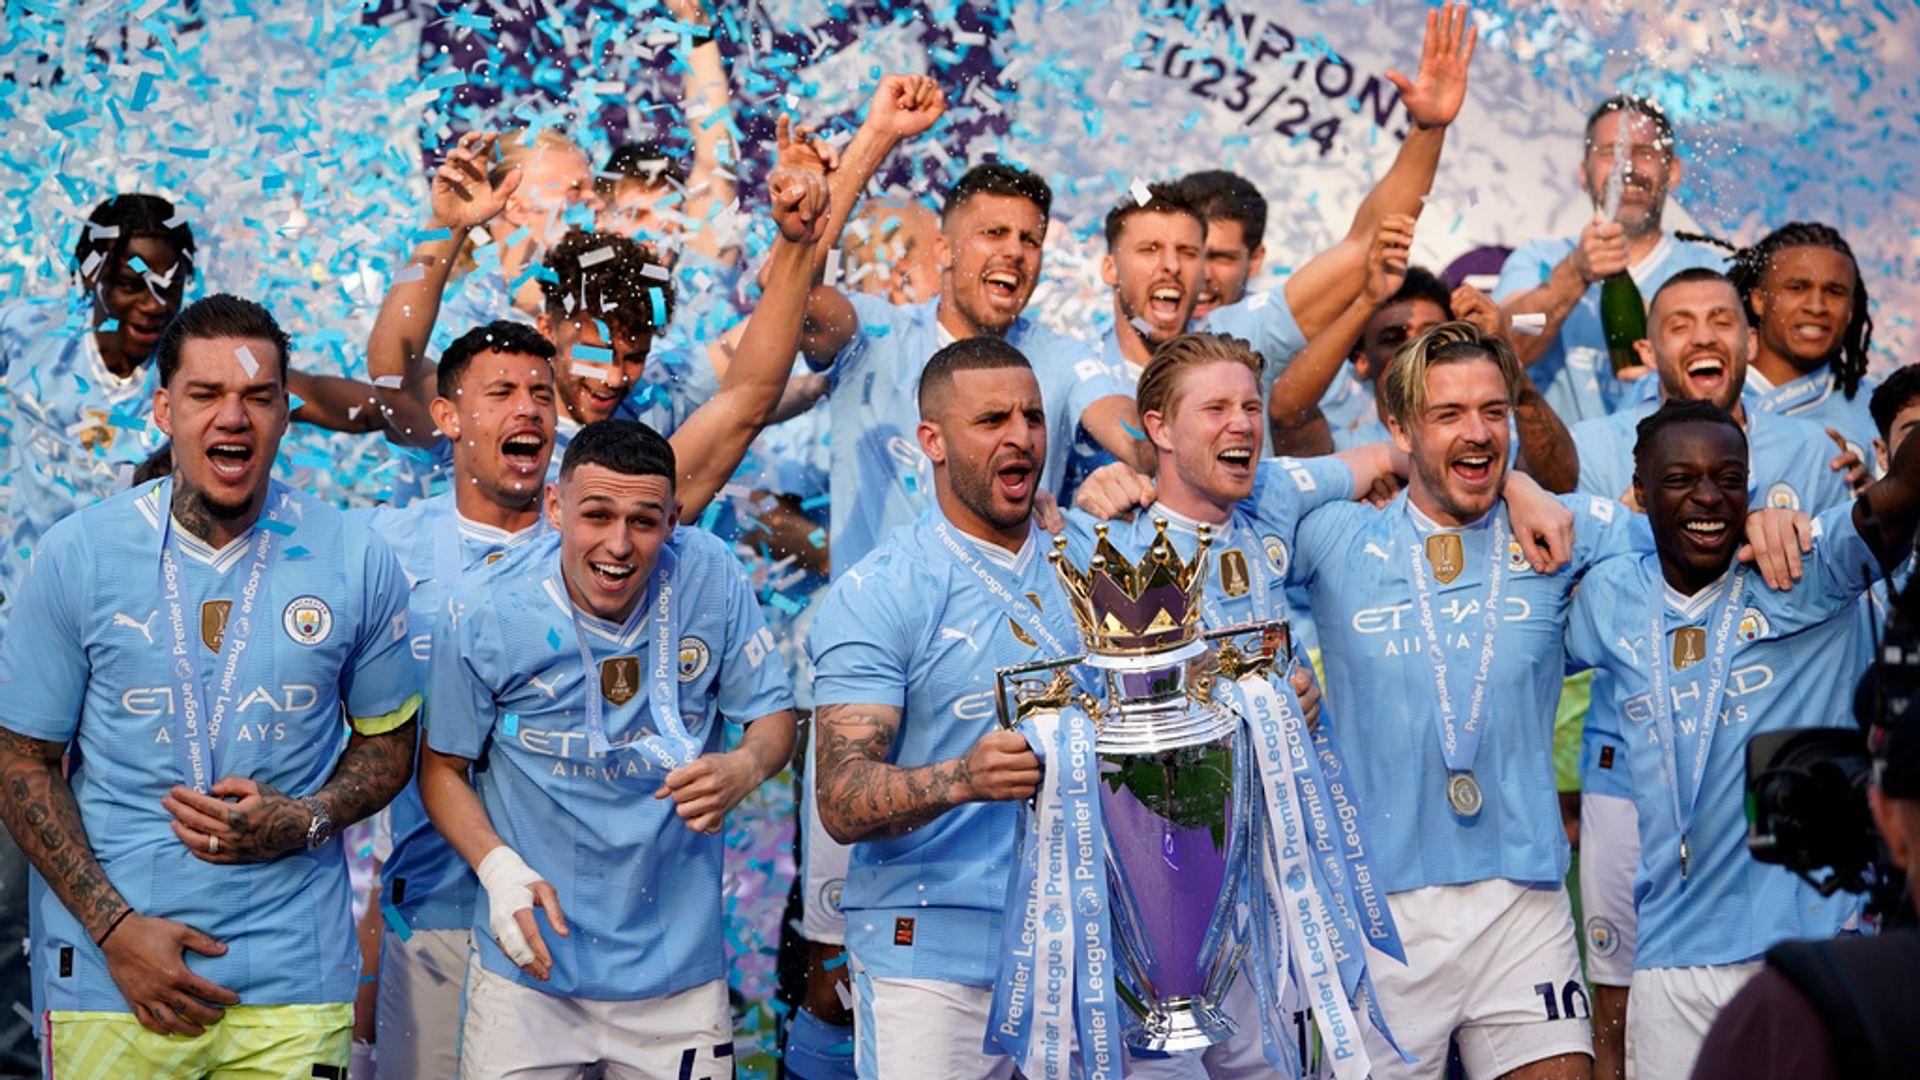 Il Man City vince il quarto titolo di fila in Premier League, un record